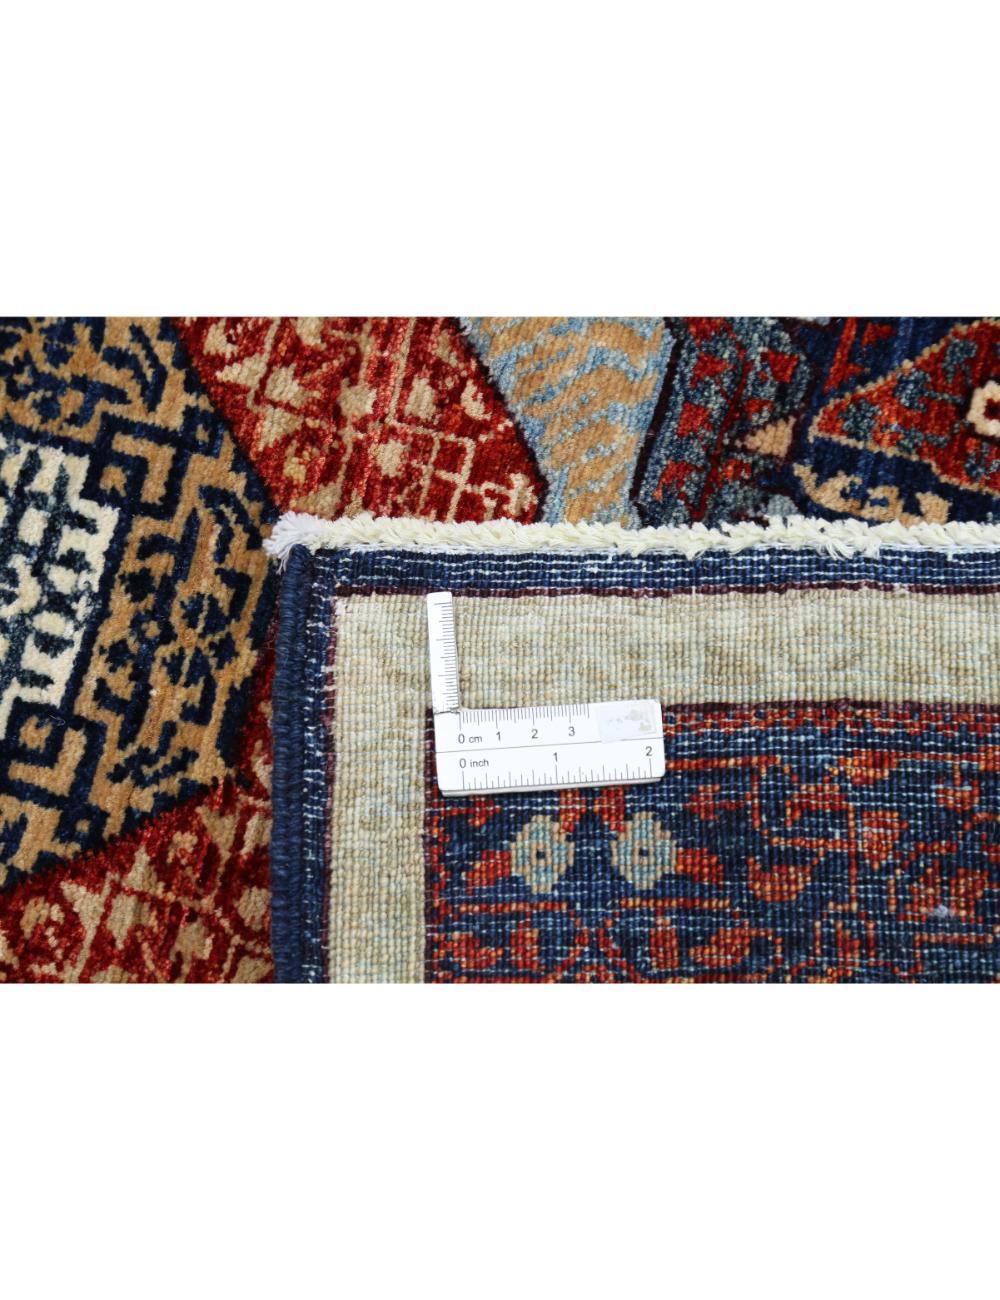 Hand Knotted Fine Mamluk Wool Rug - 4'1'' x 6'5'' Arteverk Arteverk Rugs